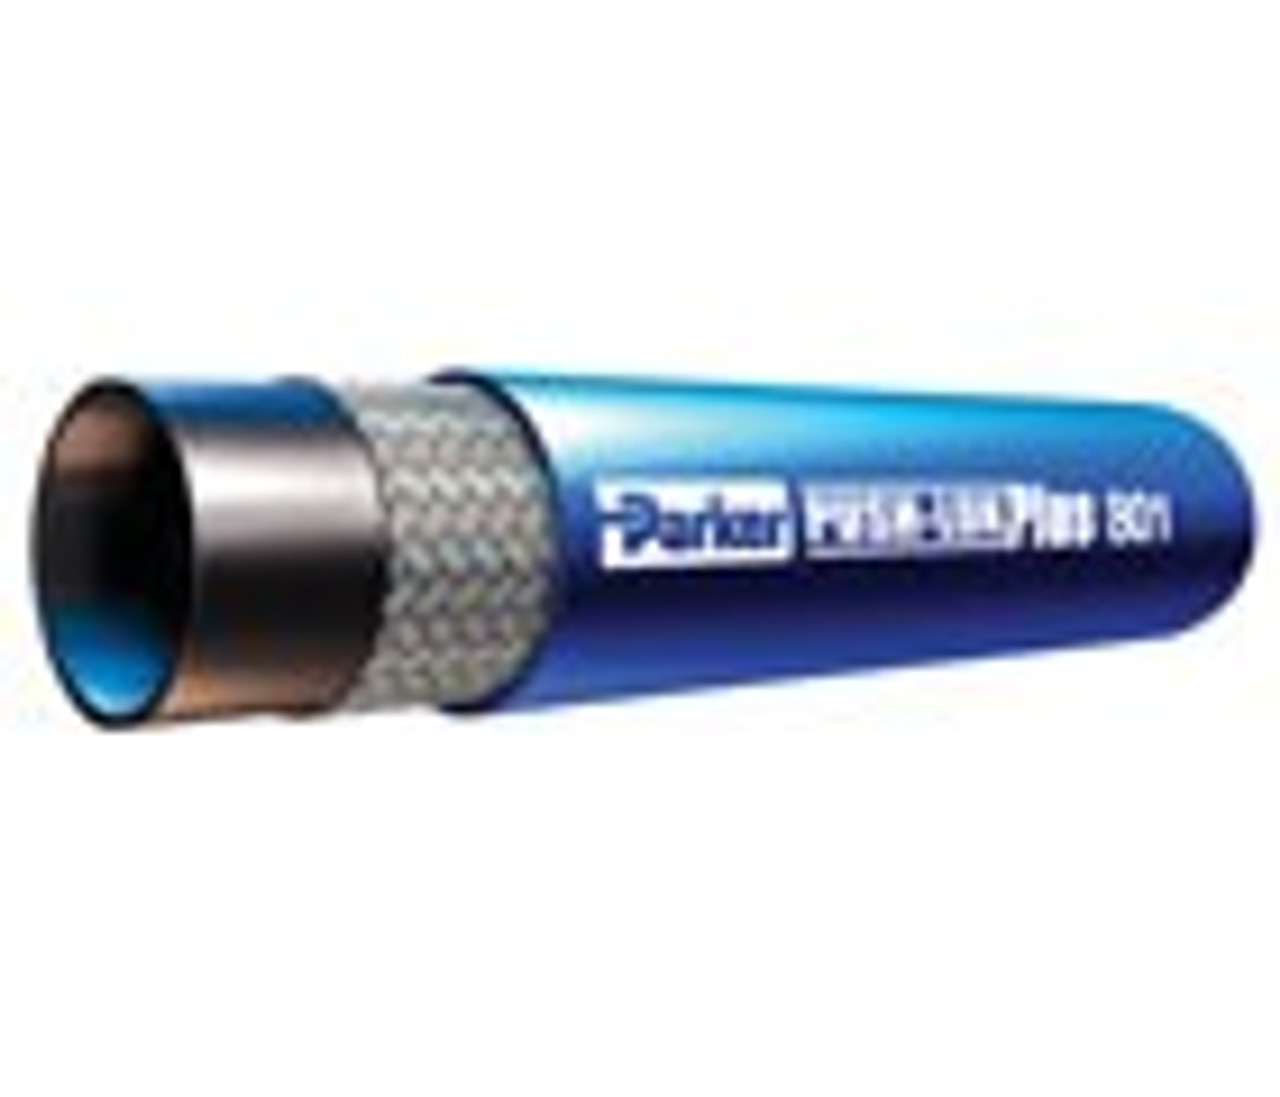 Parker 801-4-Blk-Rl 1/4" Id Push-Lok Hose Synthetic Rubber Cover 250Psi (17Bar) 1 Fiber Braid Temp Range Degrees F: (-40/+212) Black